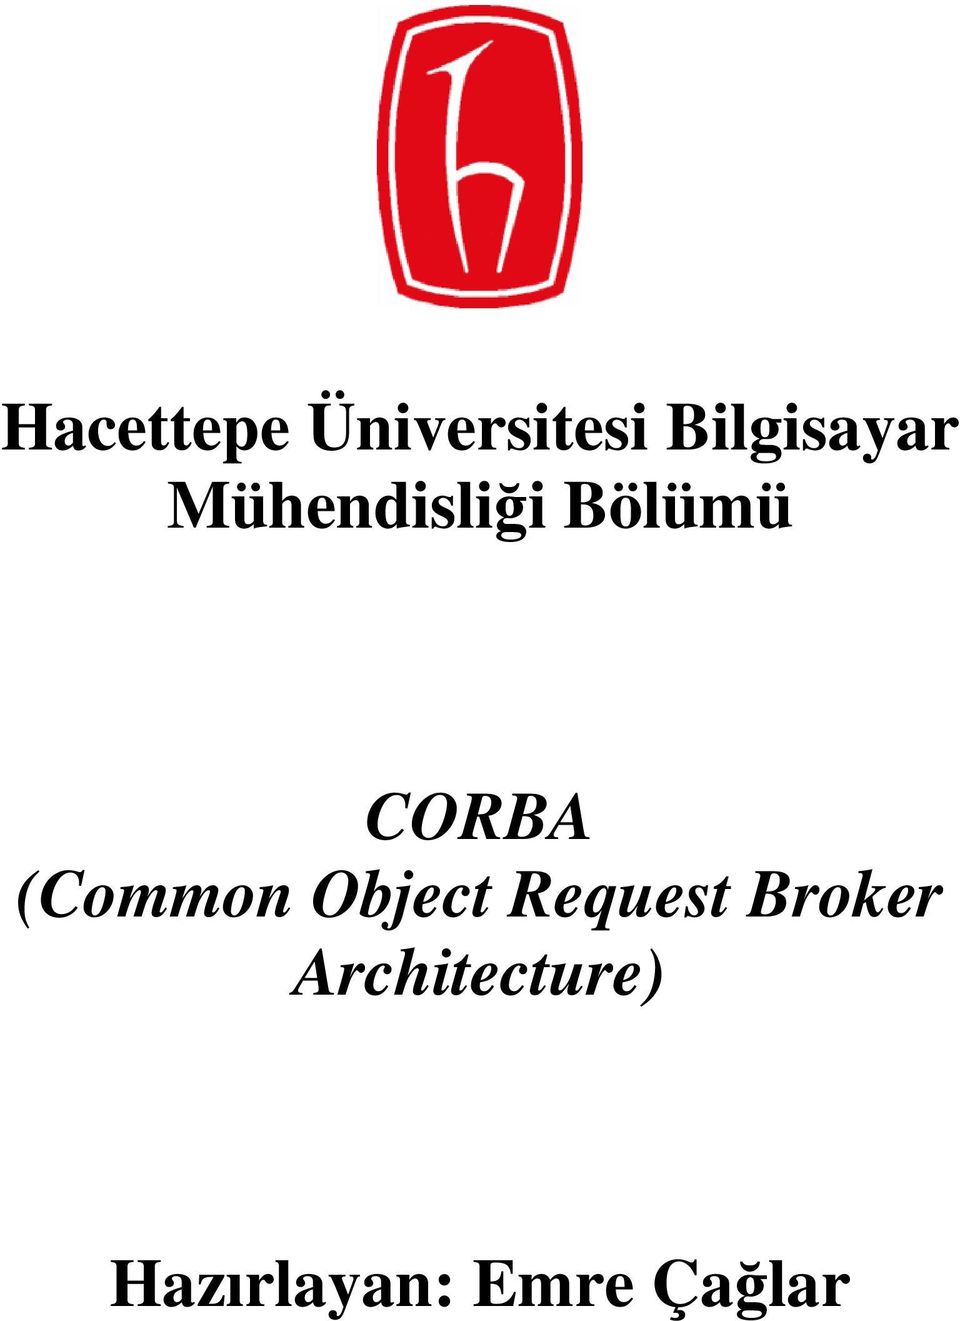 CORBA (Common Object Request